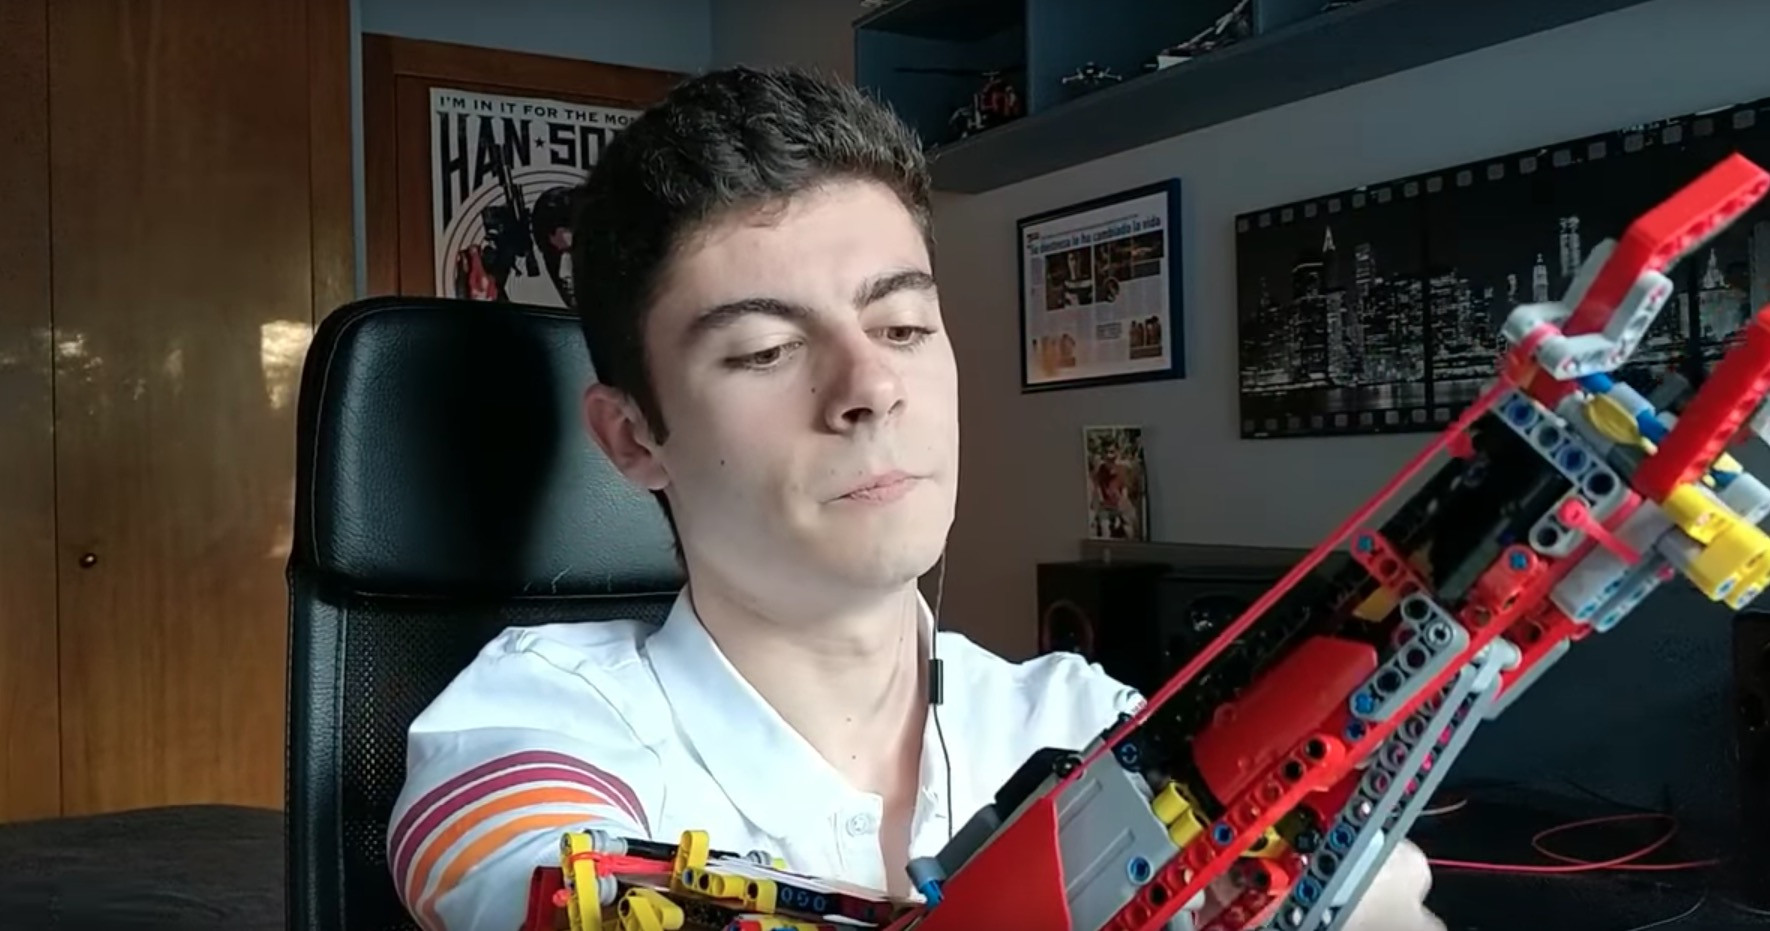 19χρονος κατασκεύασε προσθετικό χέρι από τουβλάκια Lego [Βίντεο]